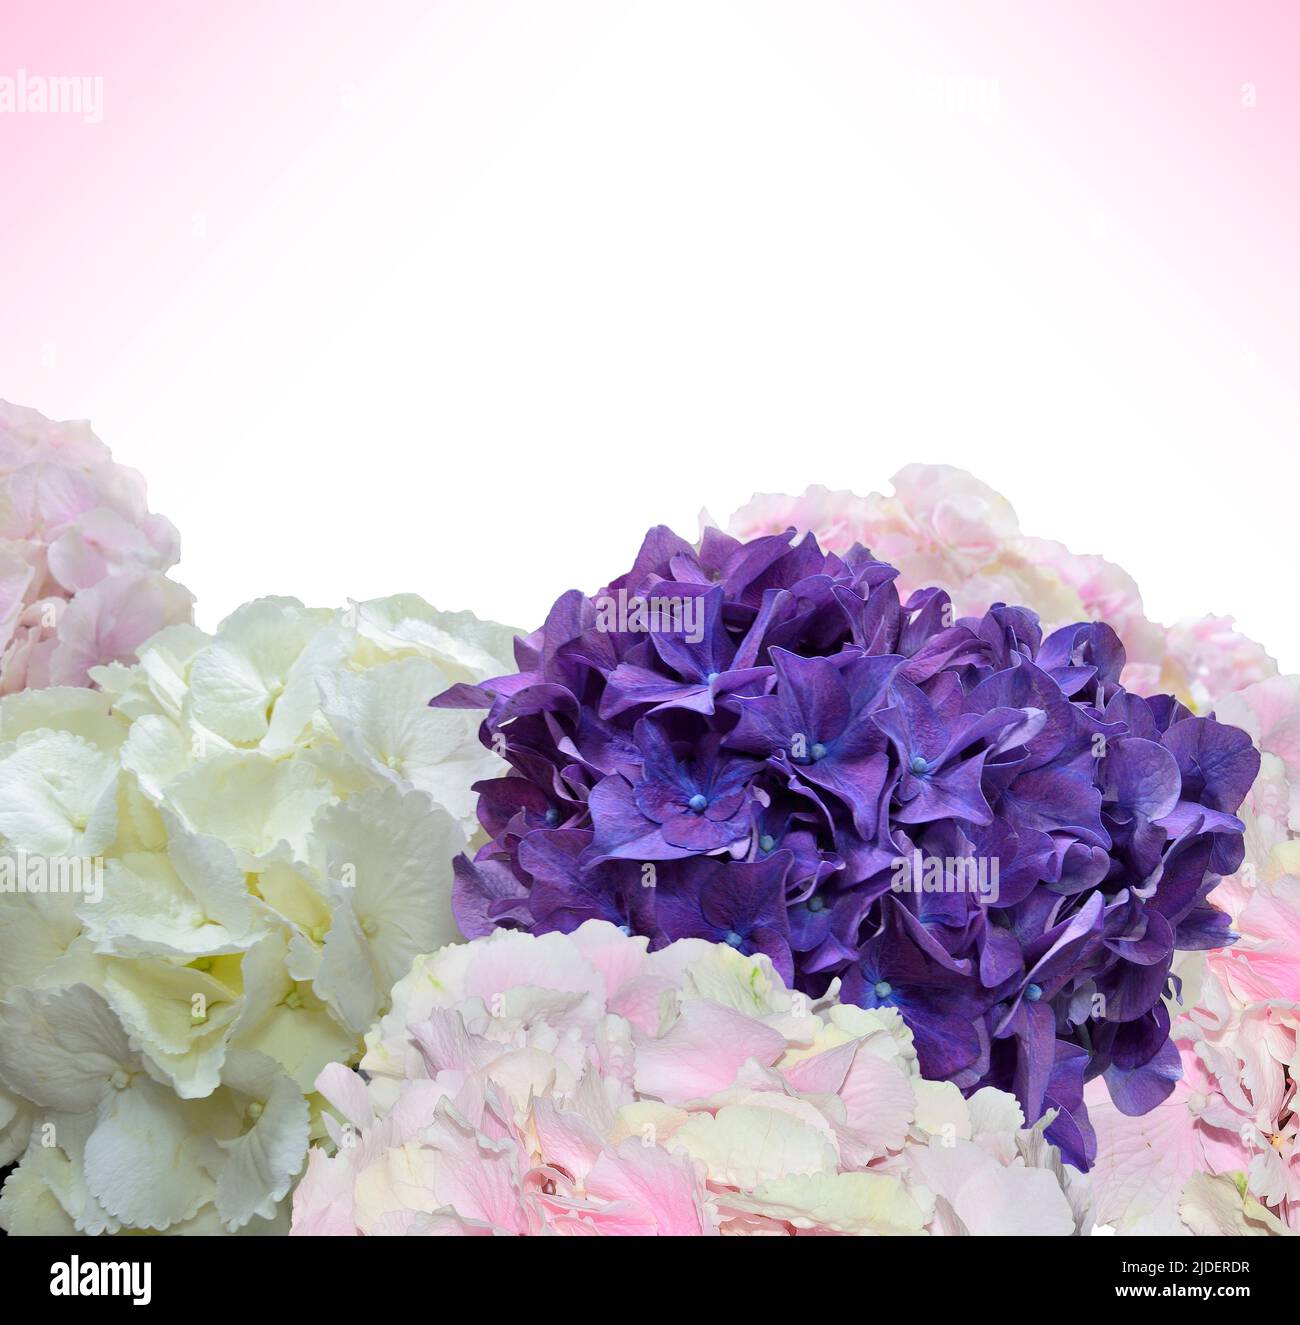 Entzückende festliche florale Hintergrund mit Hortensia Blumen isoliert auf weiß. Weiße, hellrosa und violette Hortensien aus der Nähe, Platz für Text Stockfoto